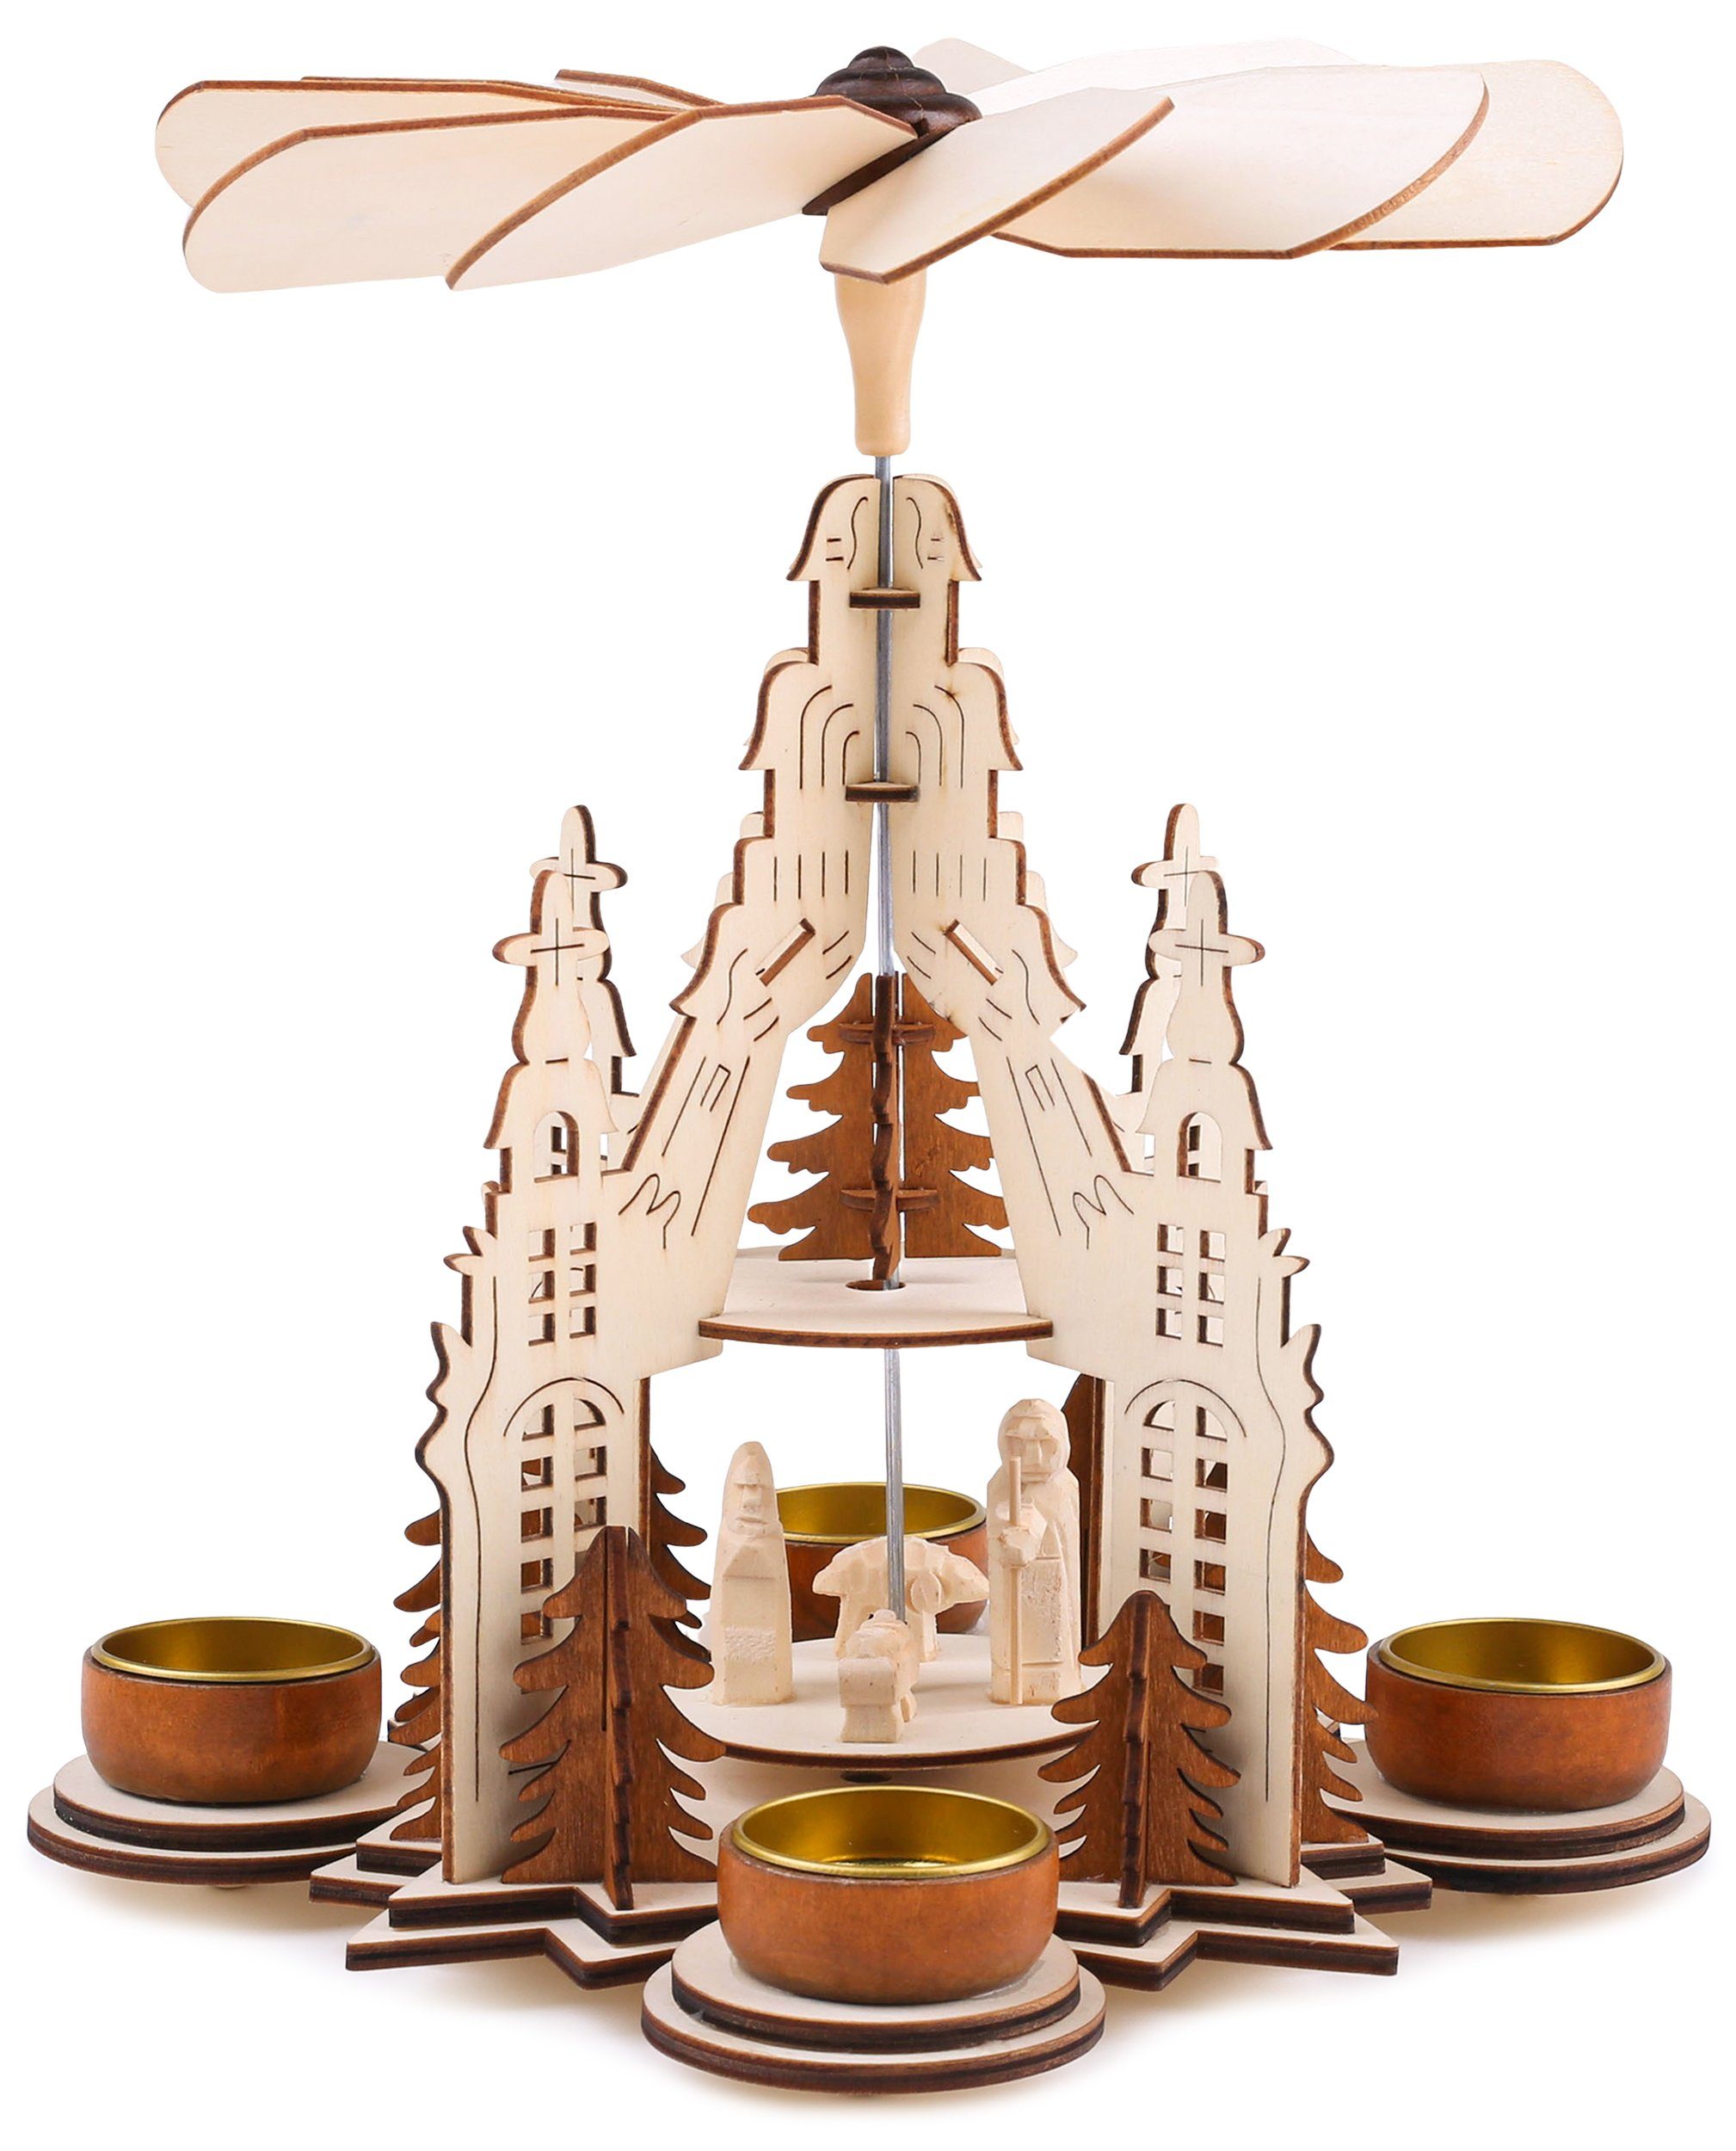 BRUBAKER Weihnachtspyramide Teelicht Holzpyramide Kathedrale - 2 Etagen, Teelichtpyramide aus Holz mit 4 Teelichthaltern aus Metall, 29 cm hoch, Weihnachtsdeko